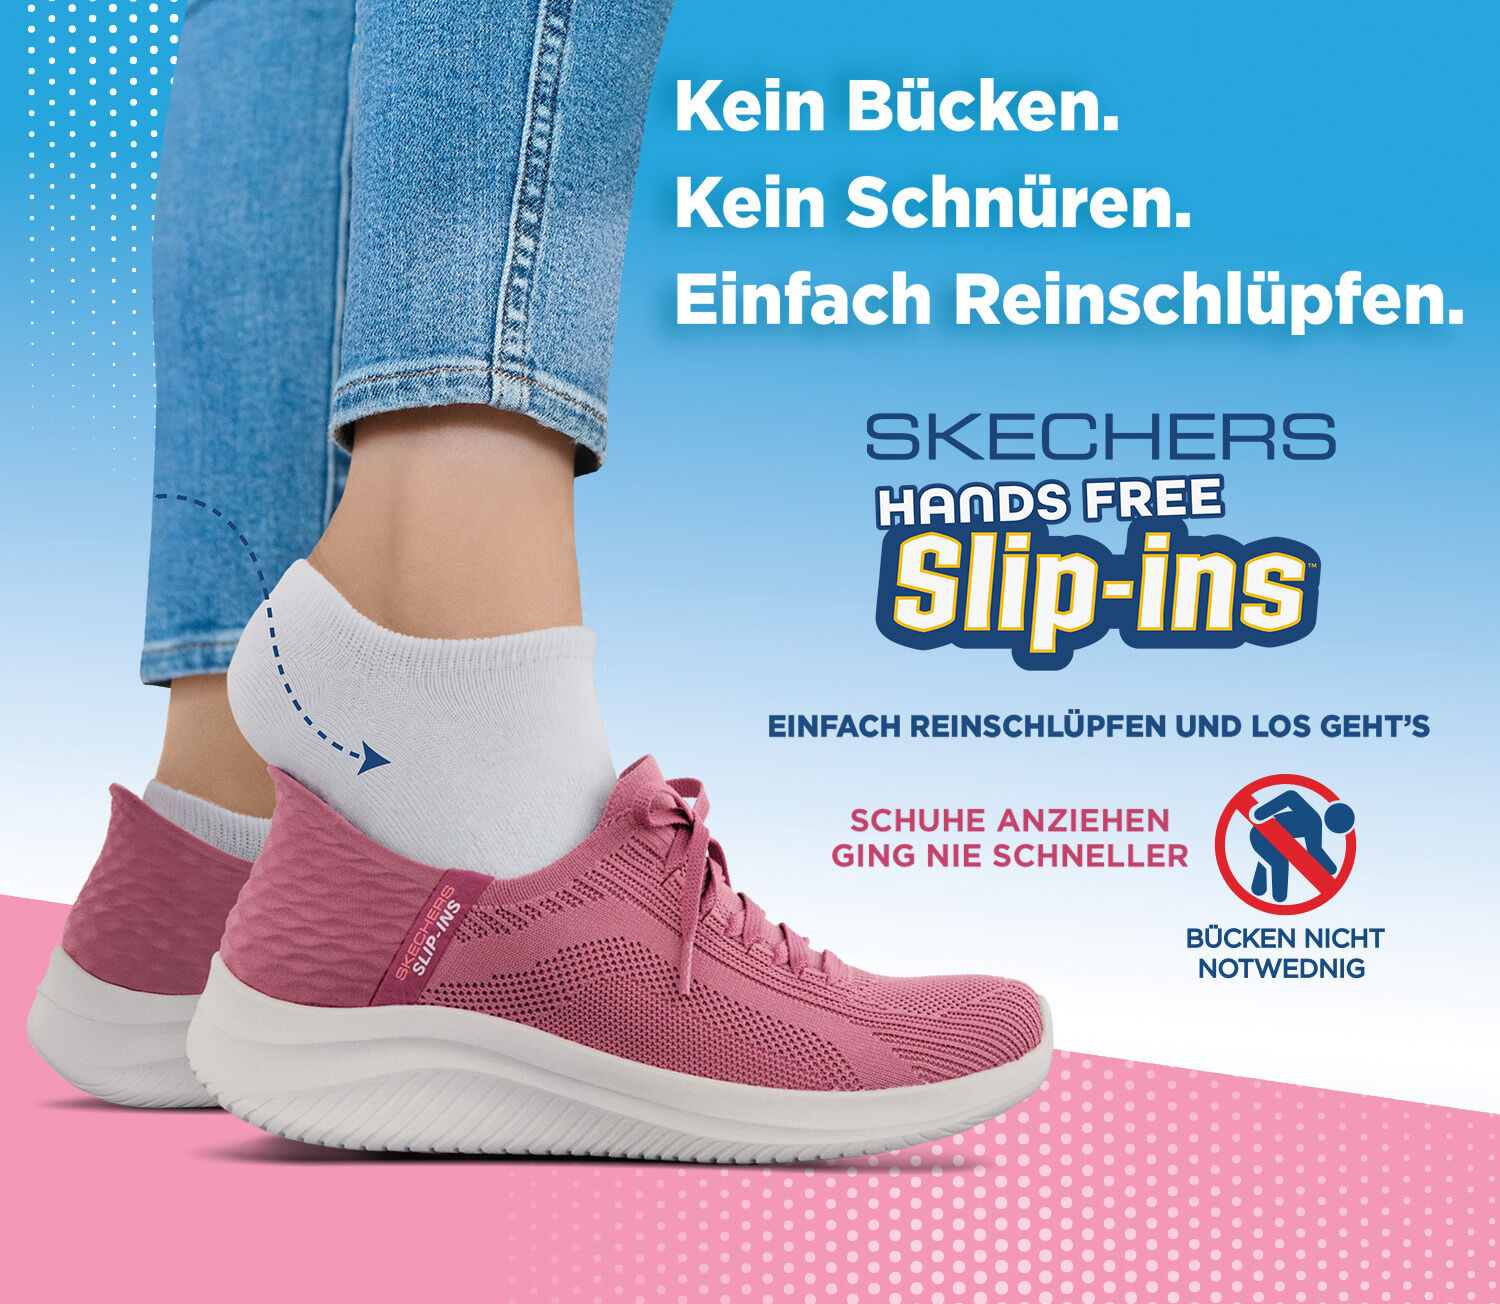 DAMEN Schuhe Print Dunkelblau/Rosa 38 Rabatt 80 % Emas Sportschuhe 